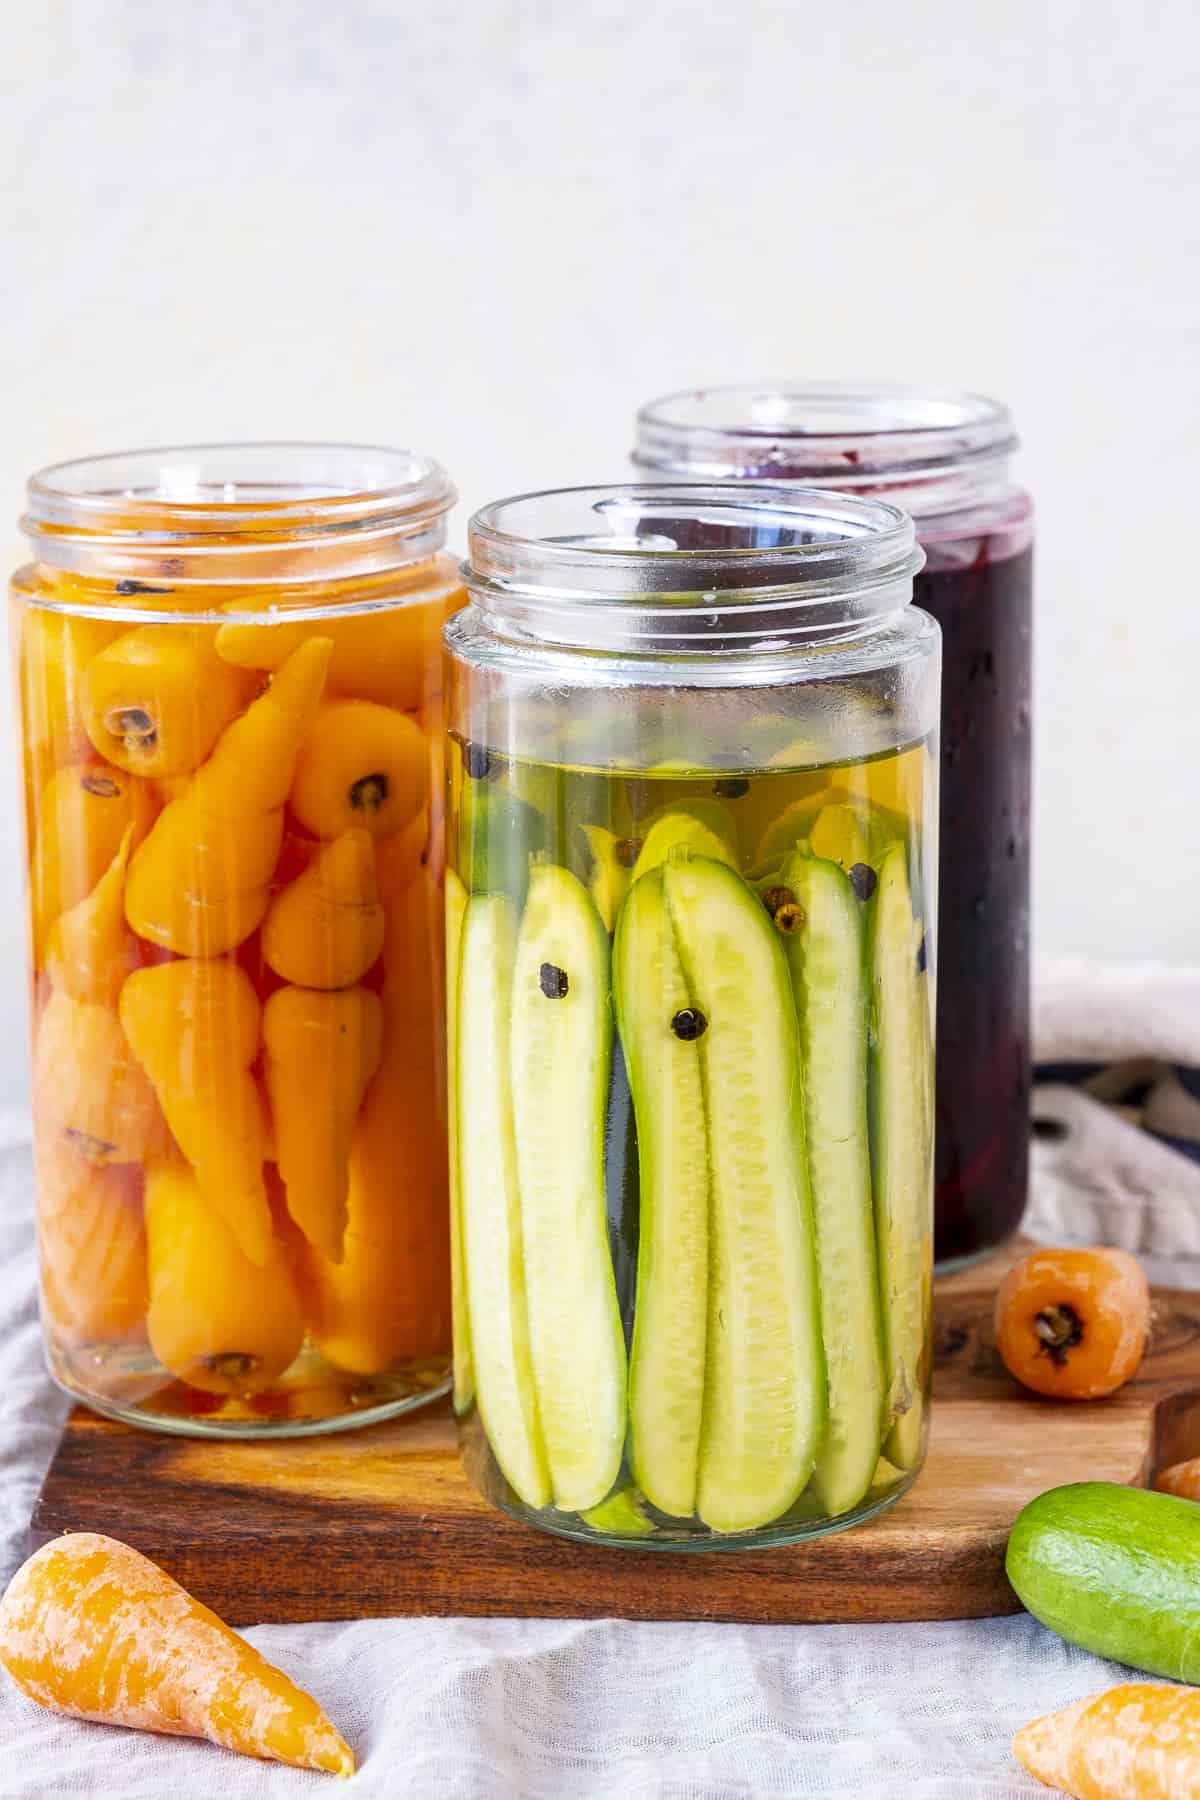 木板上的罐子里装着腌黄瓜、胡萝卜和甜菜。